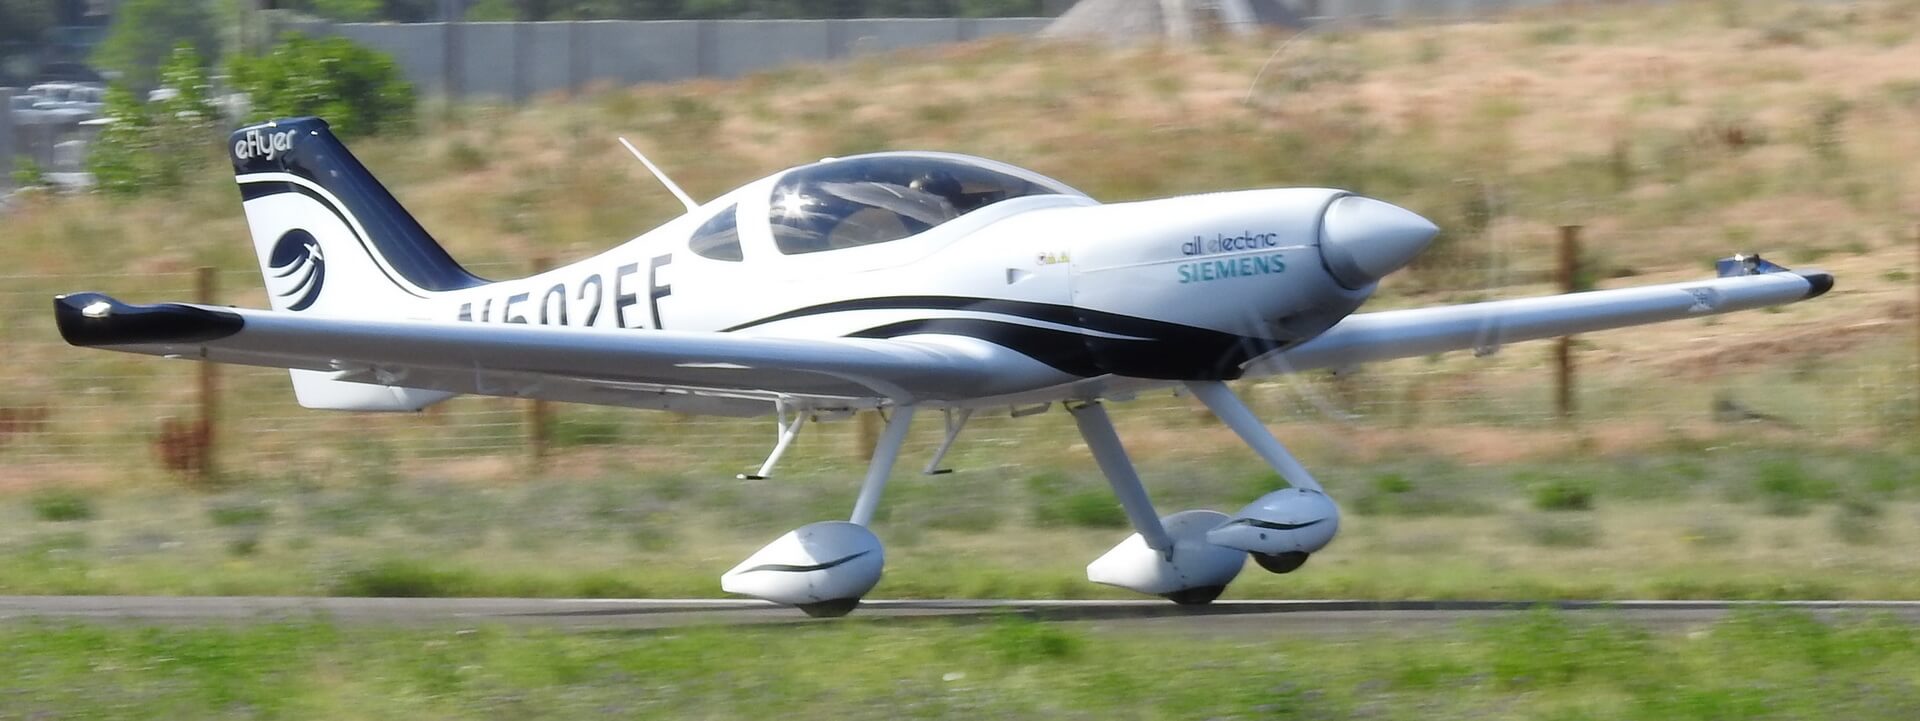 Двухместный электрический самолет eFlyer 2 начал новый этап летных испытаний с двигателем Siemens SP70D мощностью 90 кВт